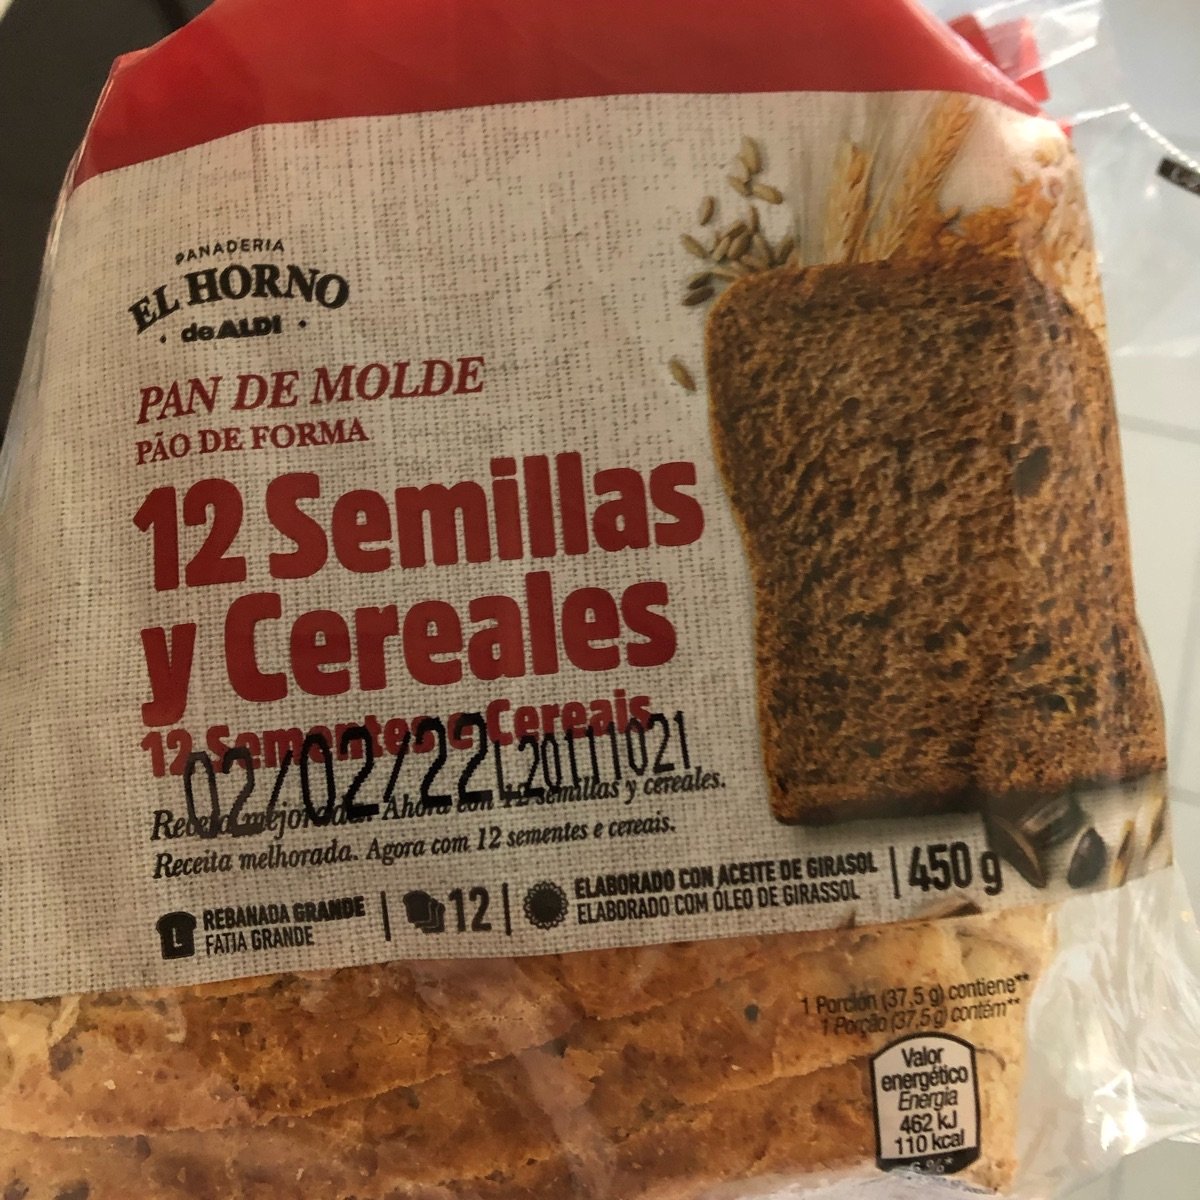 El Horno de Aldi Pan de molde 12 semillas y cereales Reviews | abillion